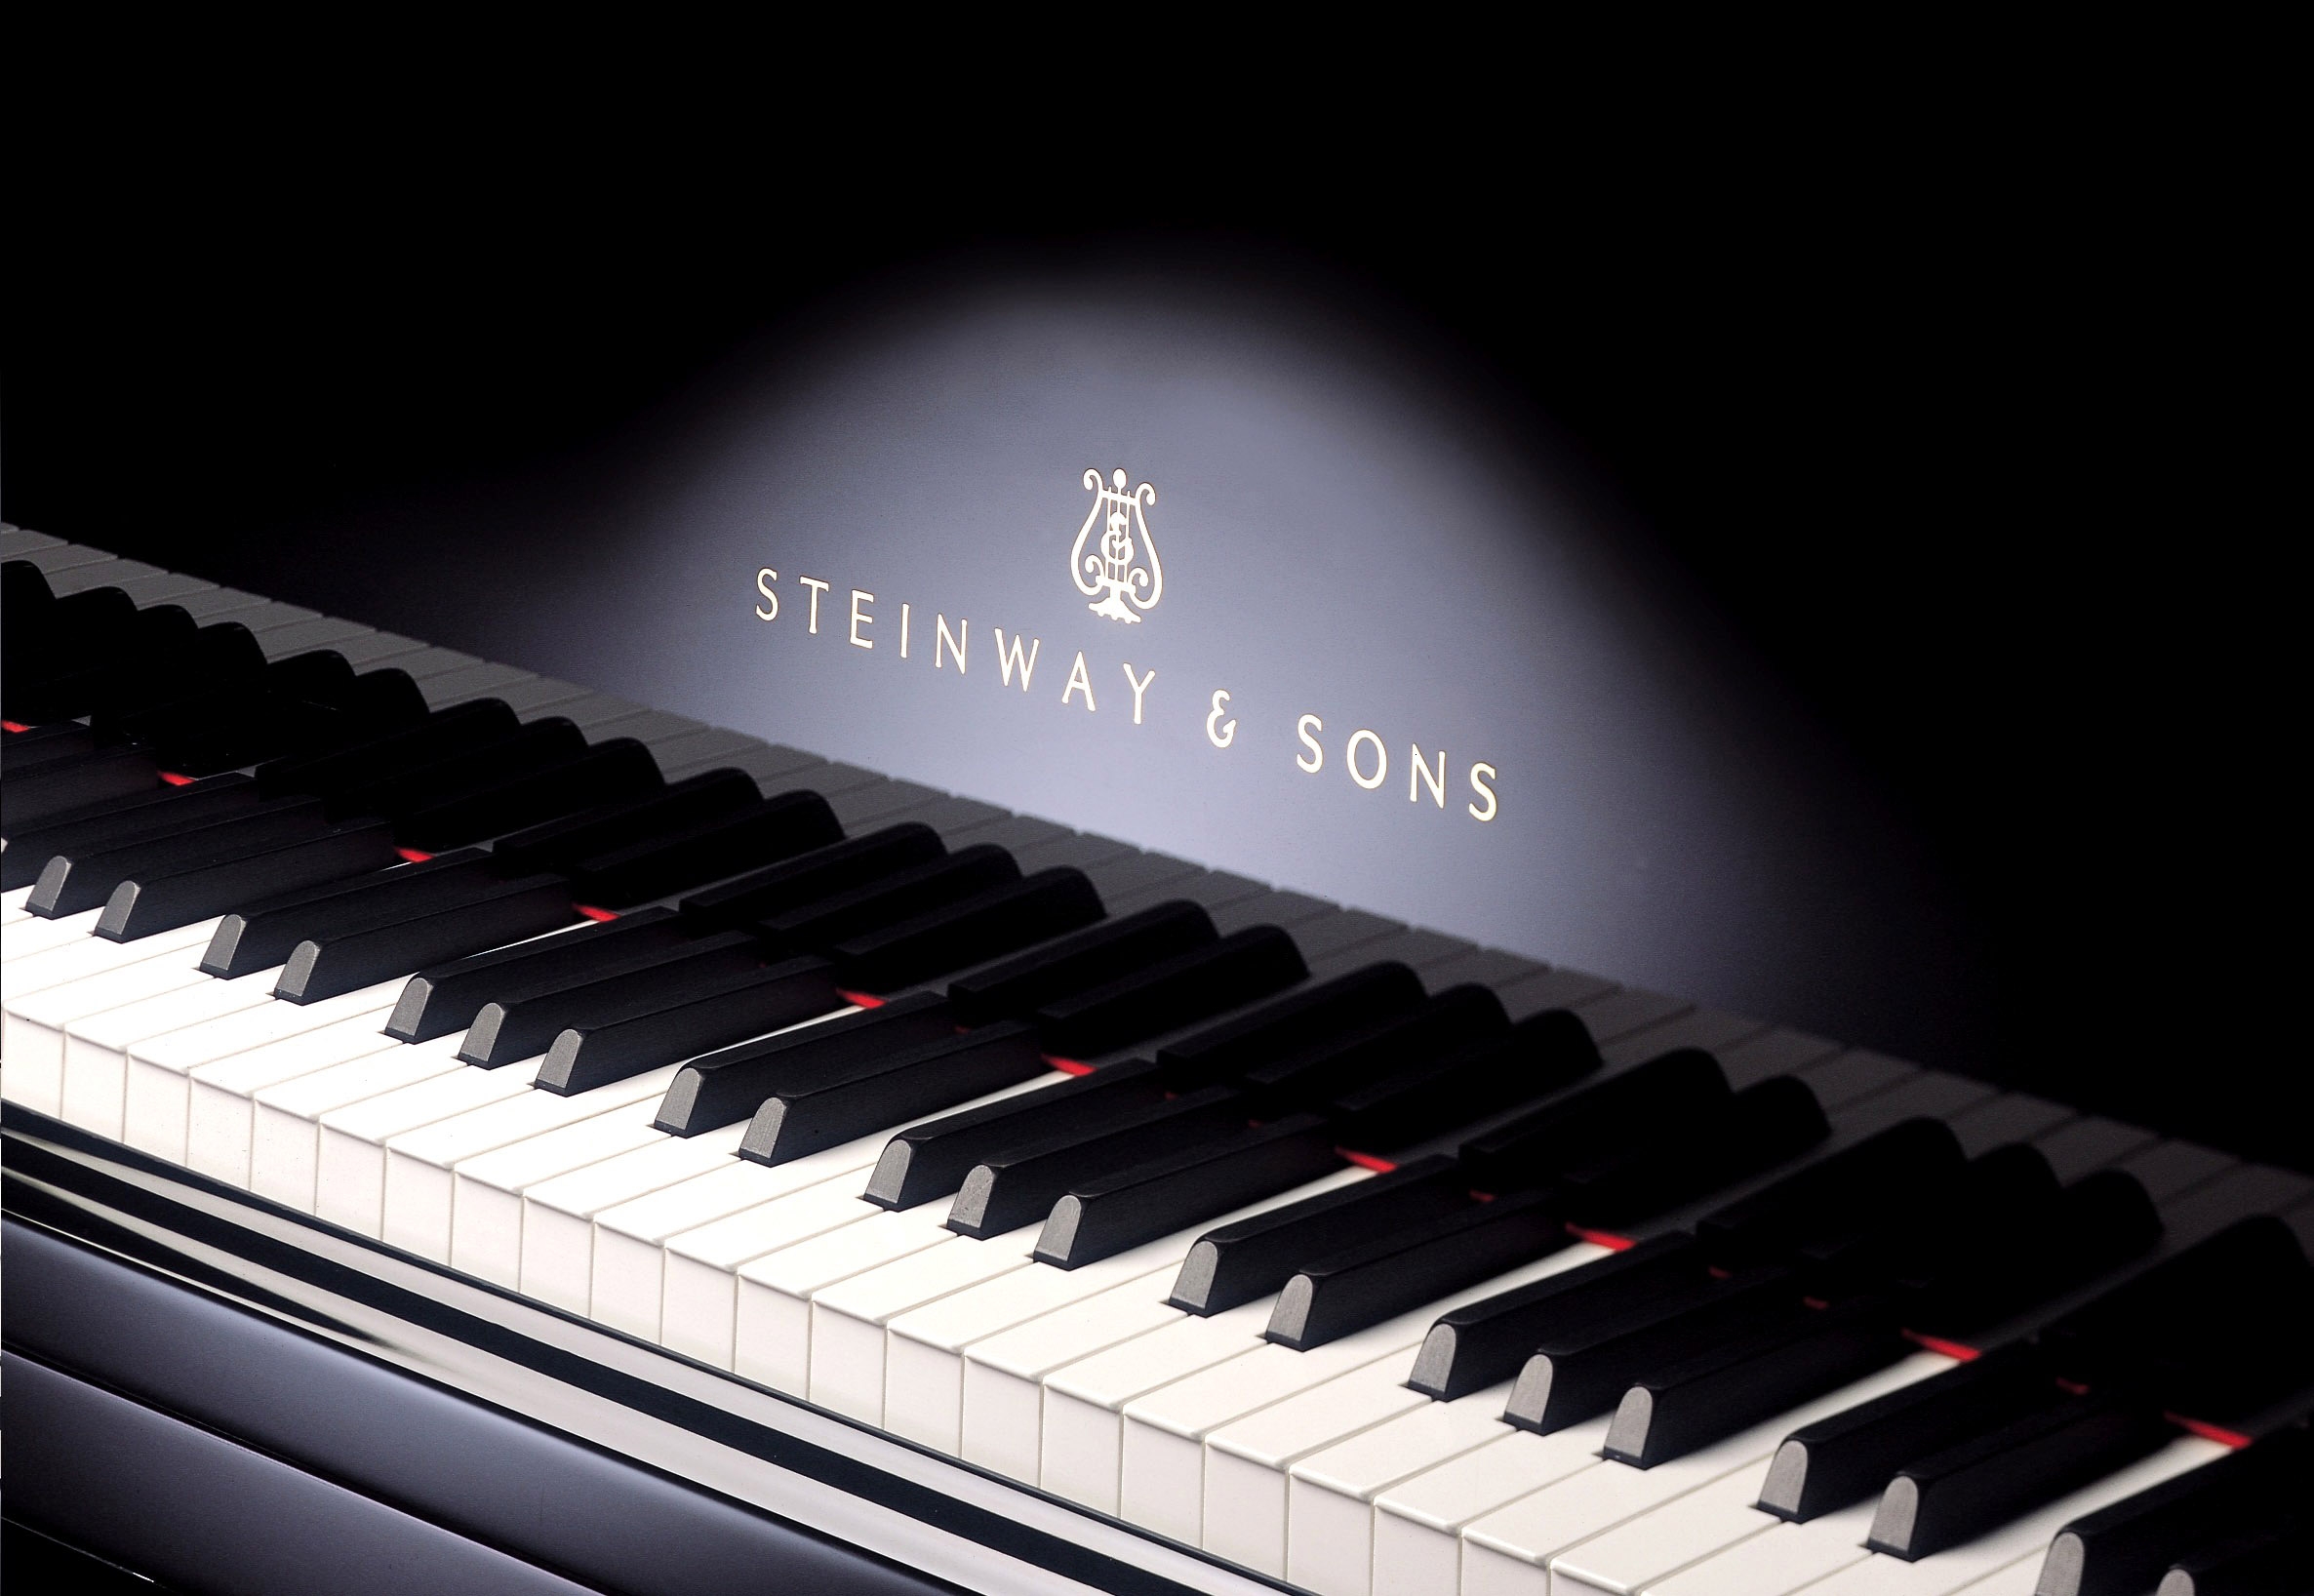 Клавиши белого рояля. Пианино Steinway sons. Концертный рояль Стейнвей. Клавиатура рояля. Фортепиано.